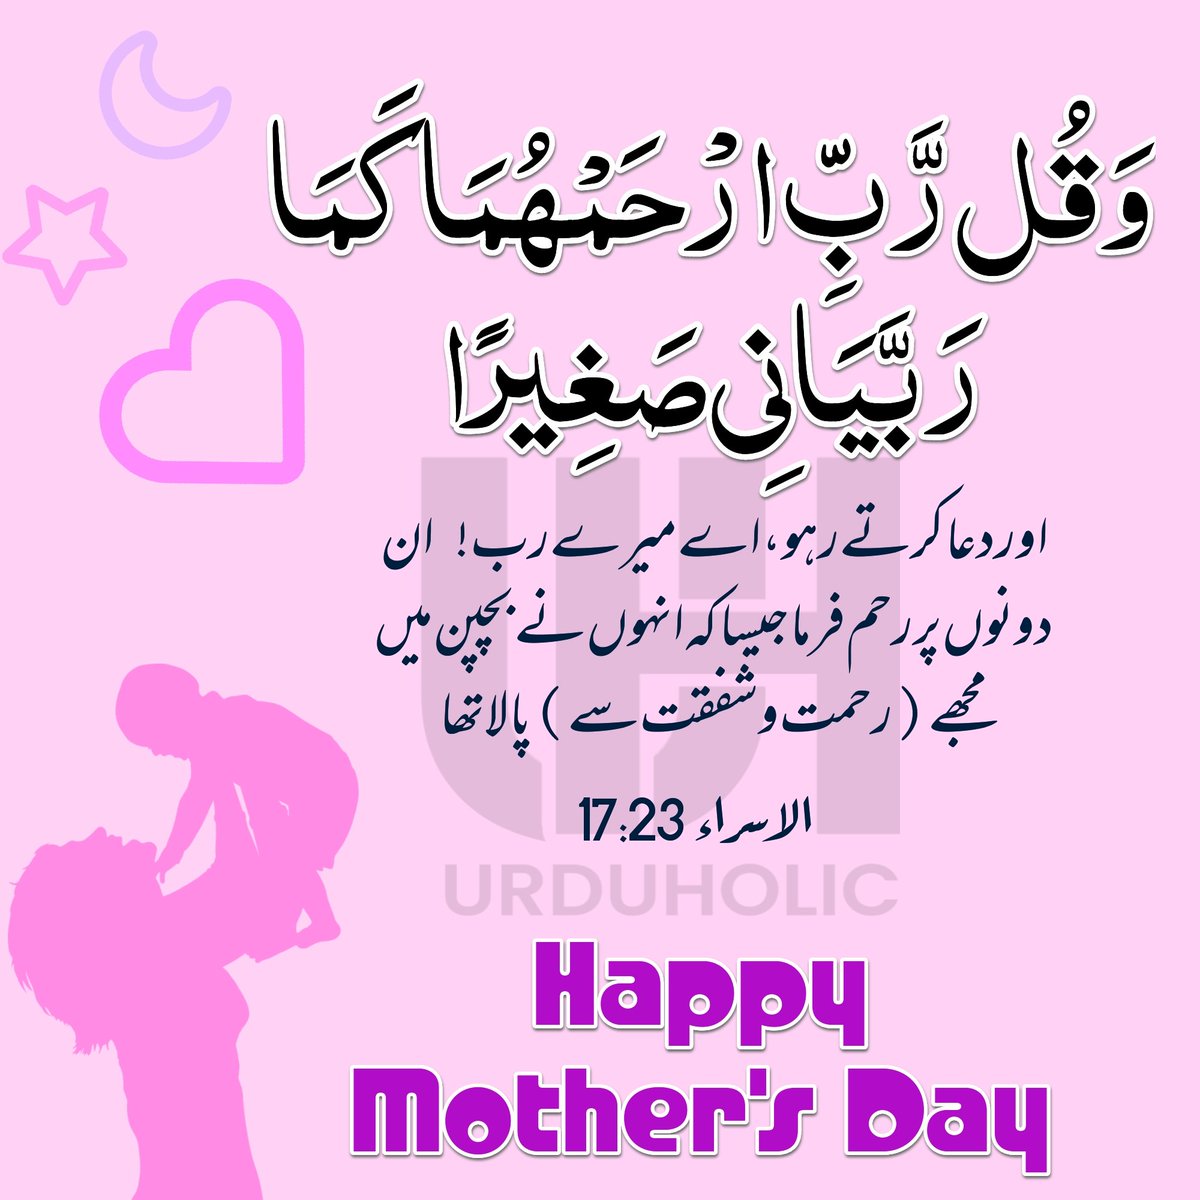 #MothersDay #12thmay #HappyMothersDay #HappyMotherDay